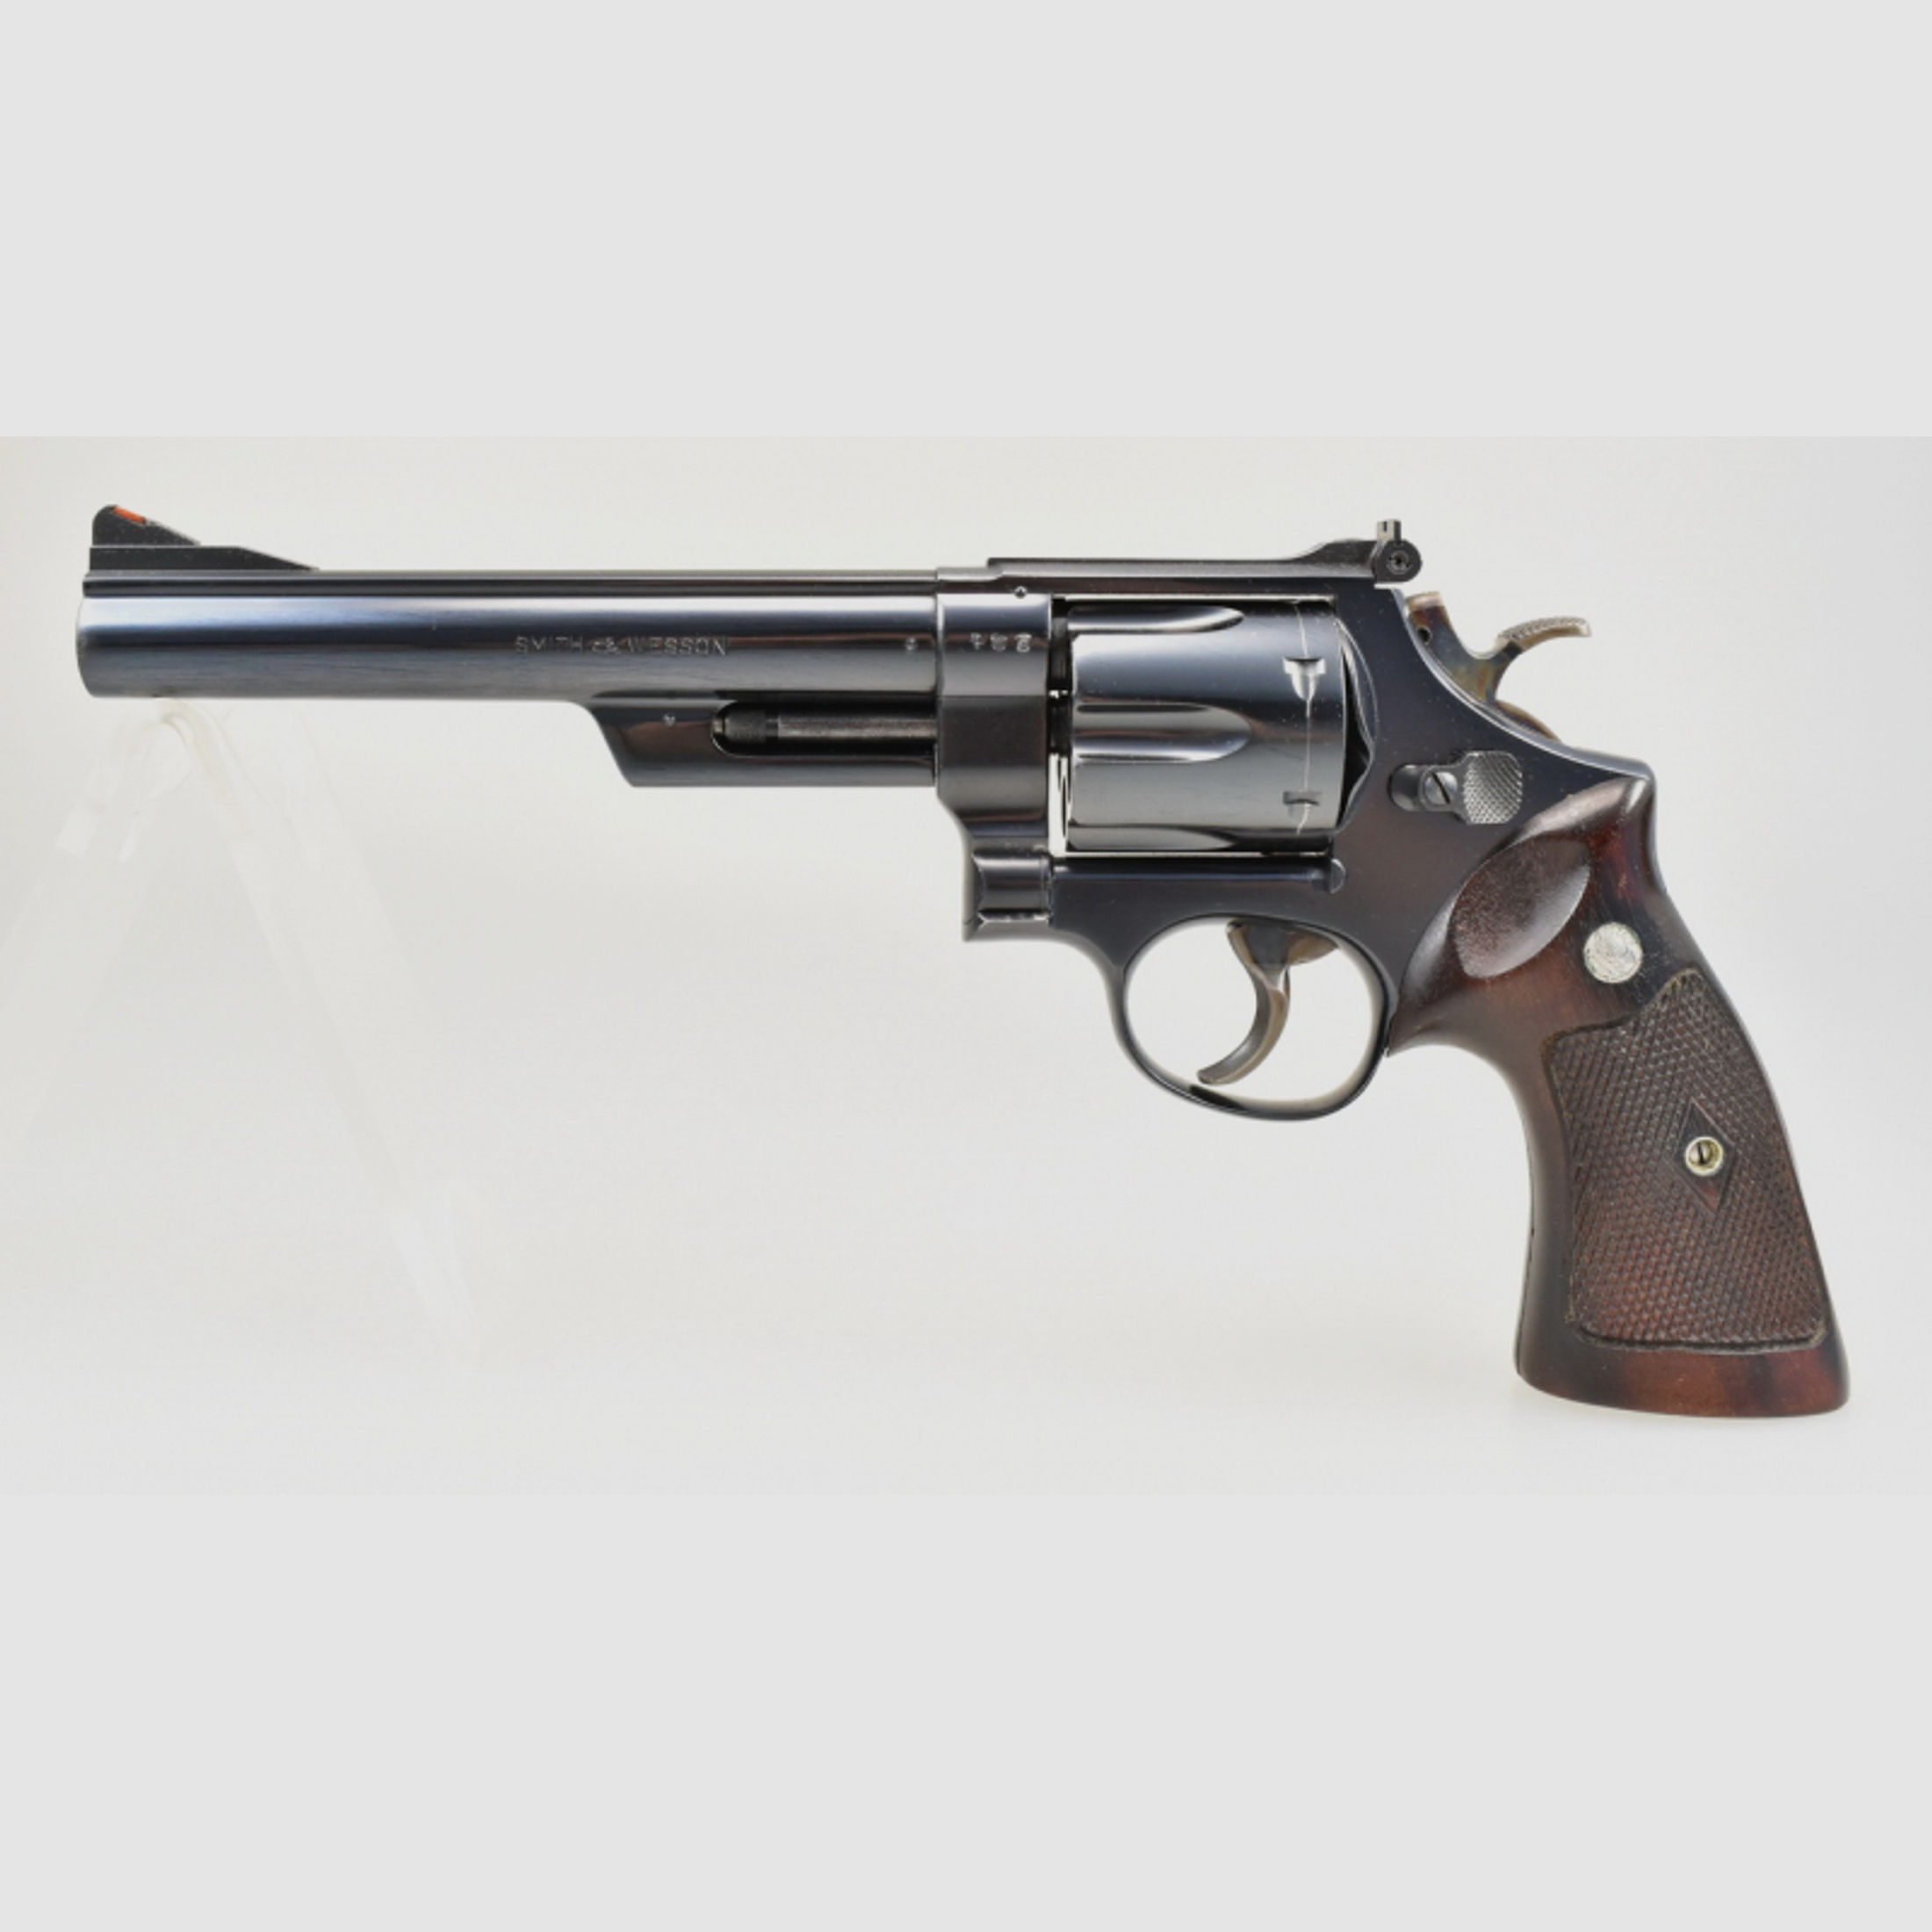 SMITH & WESSON Revolver Modell 29 mit 6,5" Lauf im Kaliber .44 Magnum